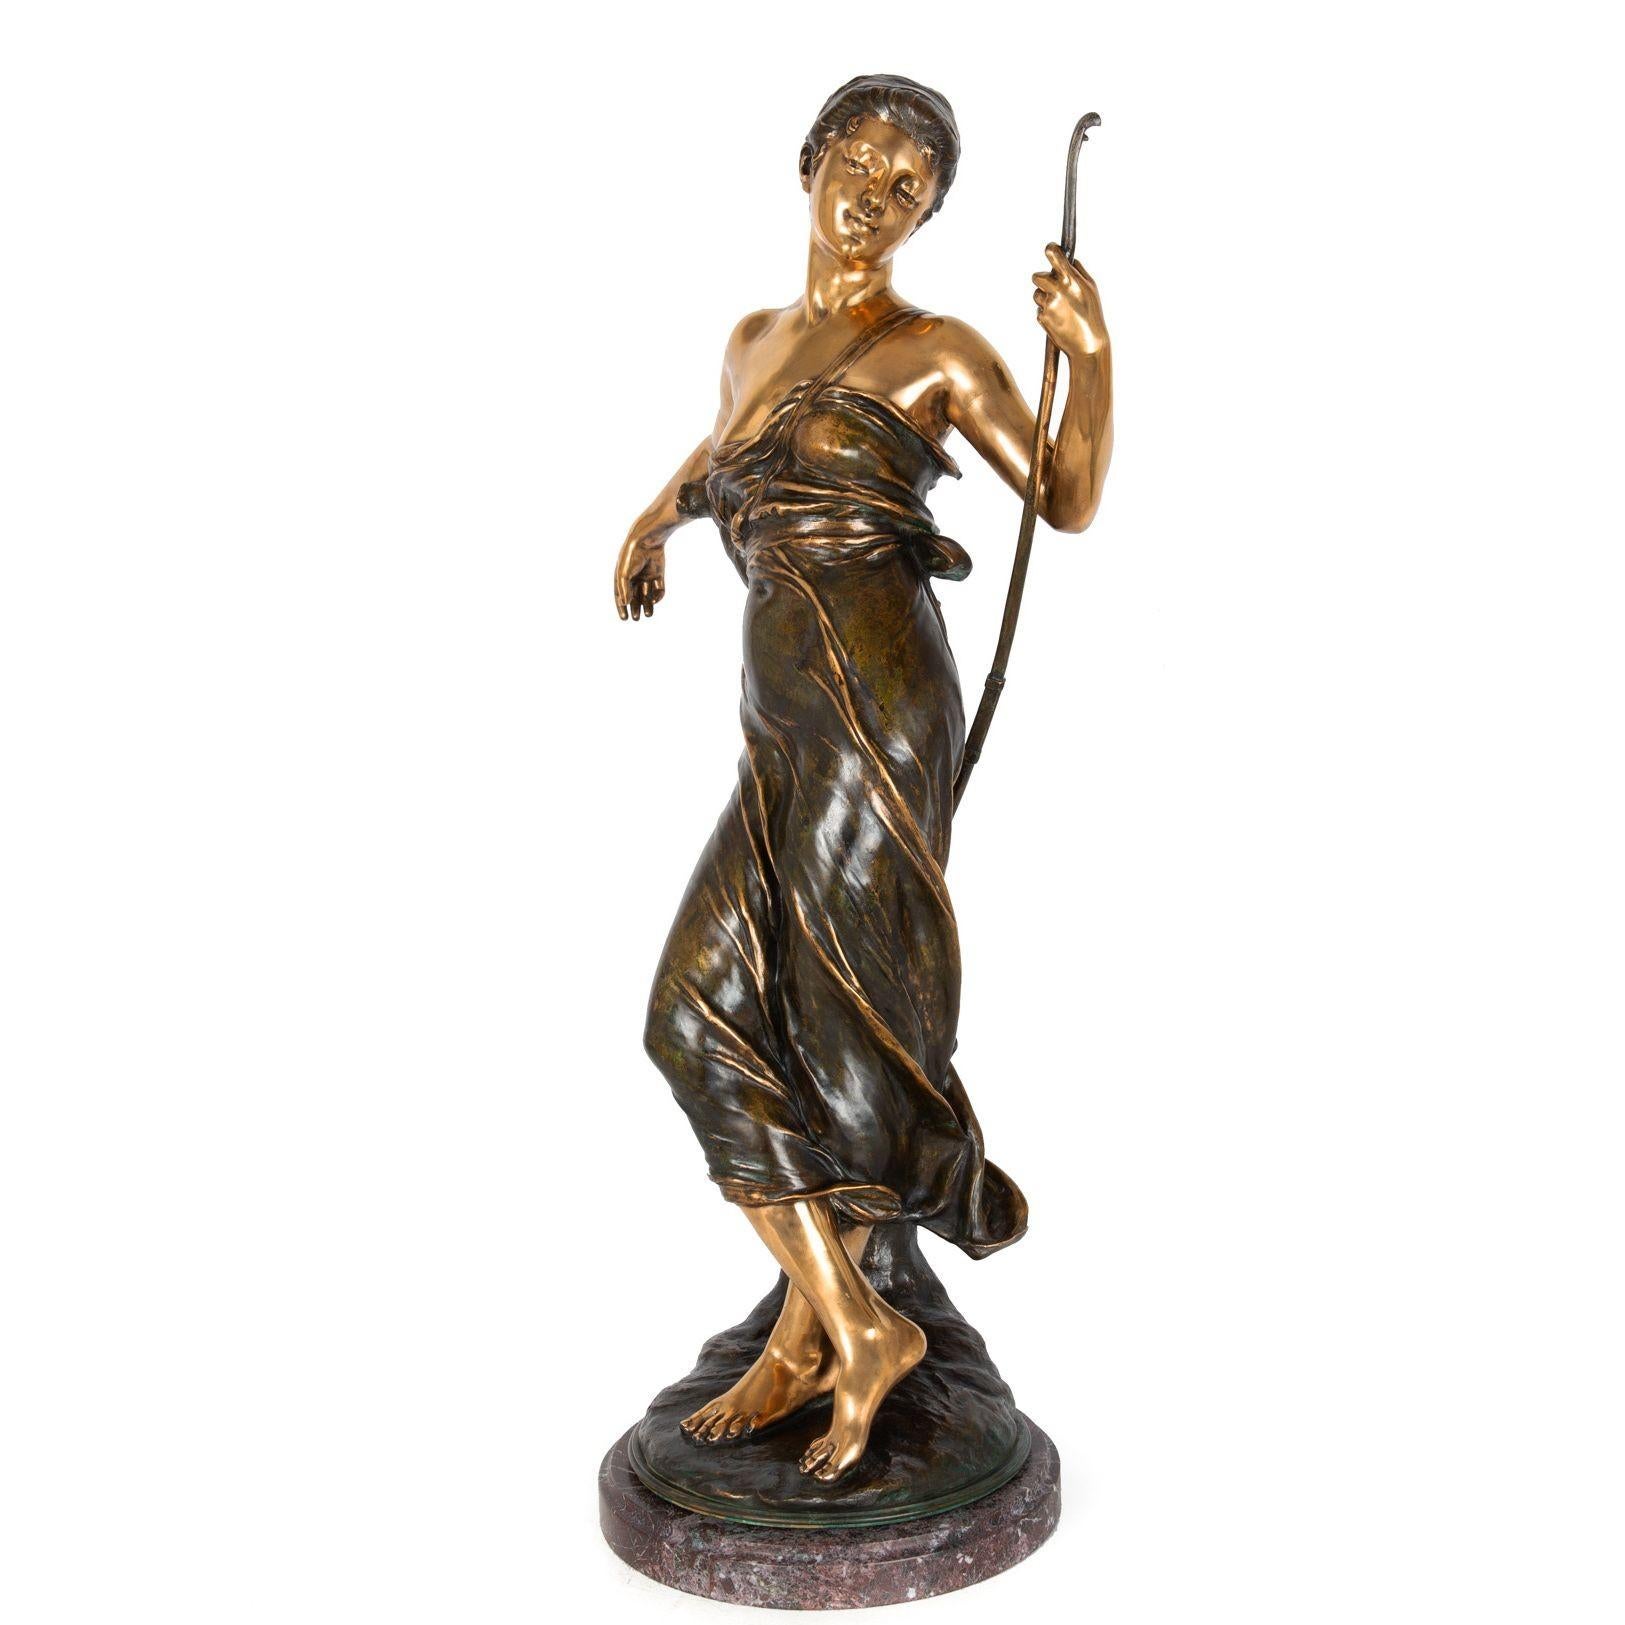 EUGÈNE MARIOTON
Französisch, 1857-1933

Diana, die Jägerin

Patinierte und brünierte Bronze  unterschrieben in der Basis 